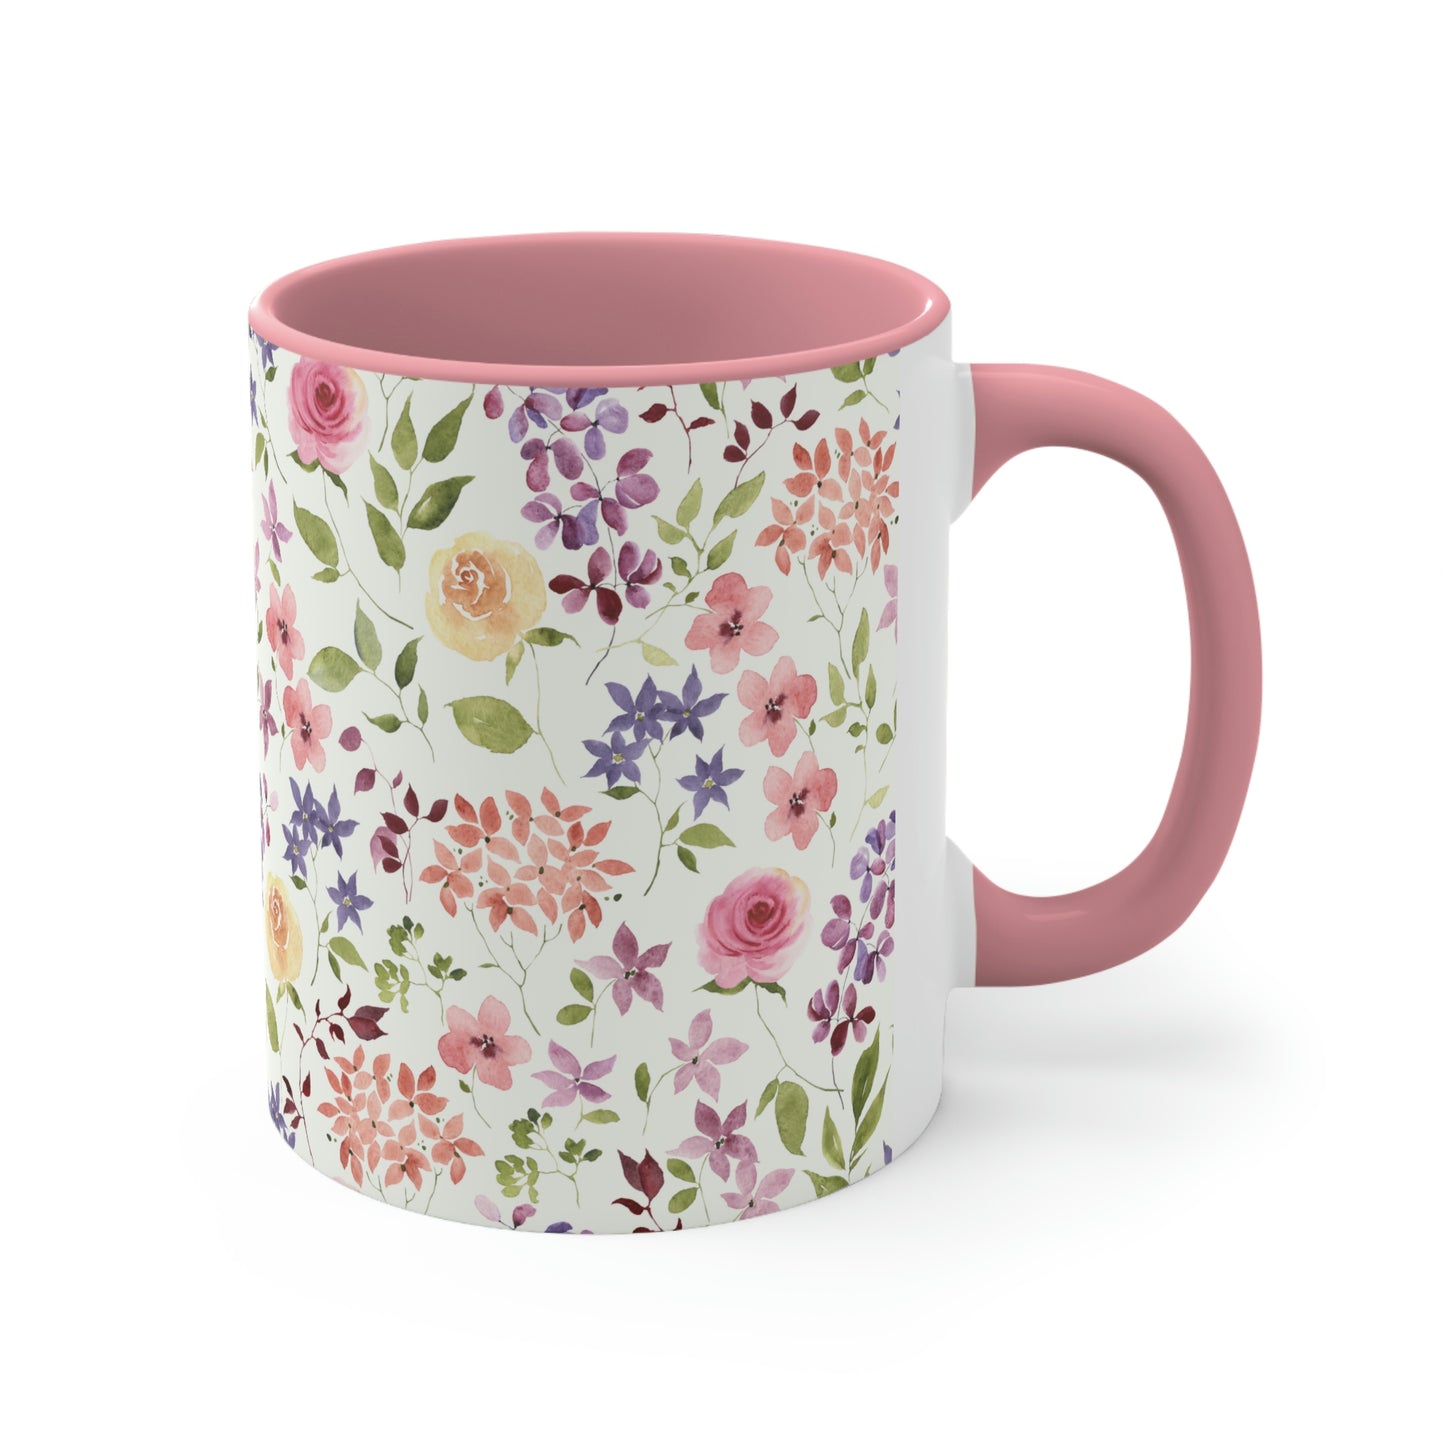 Yellow and Pink Roses Coffee Mug, 11oz